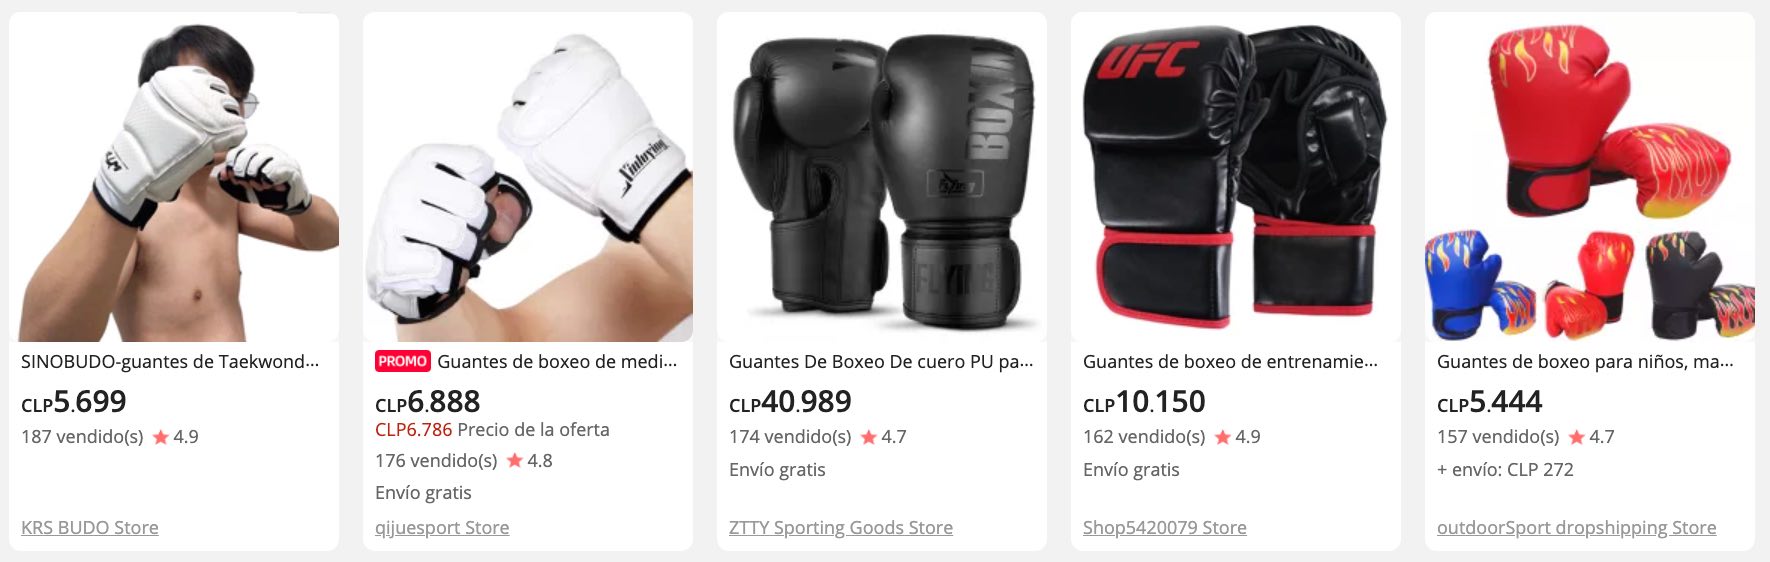 comprar guantes para boxeo en aliexpress